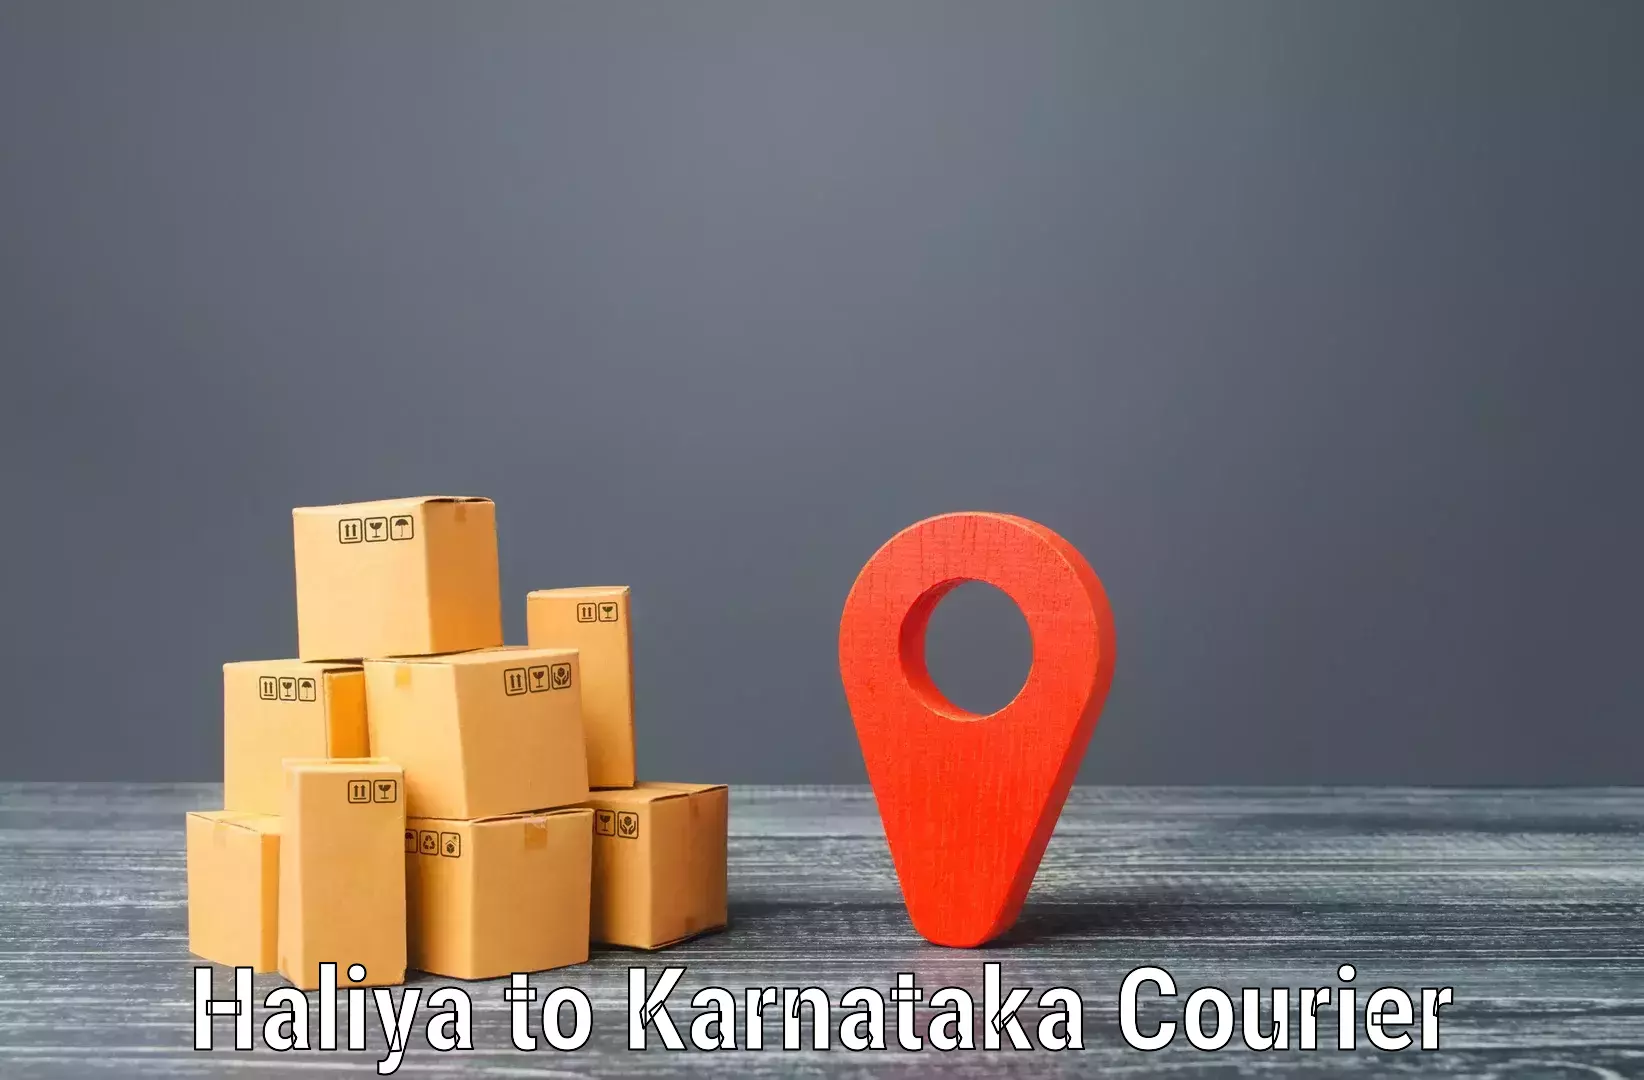 Online courier booking Haliya to Karnataka